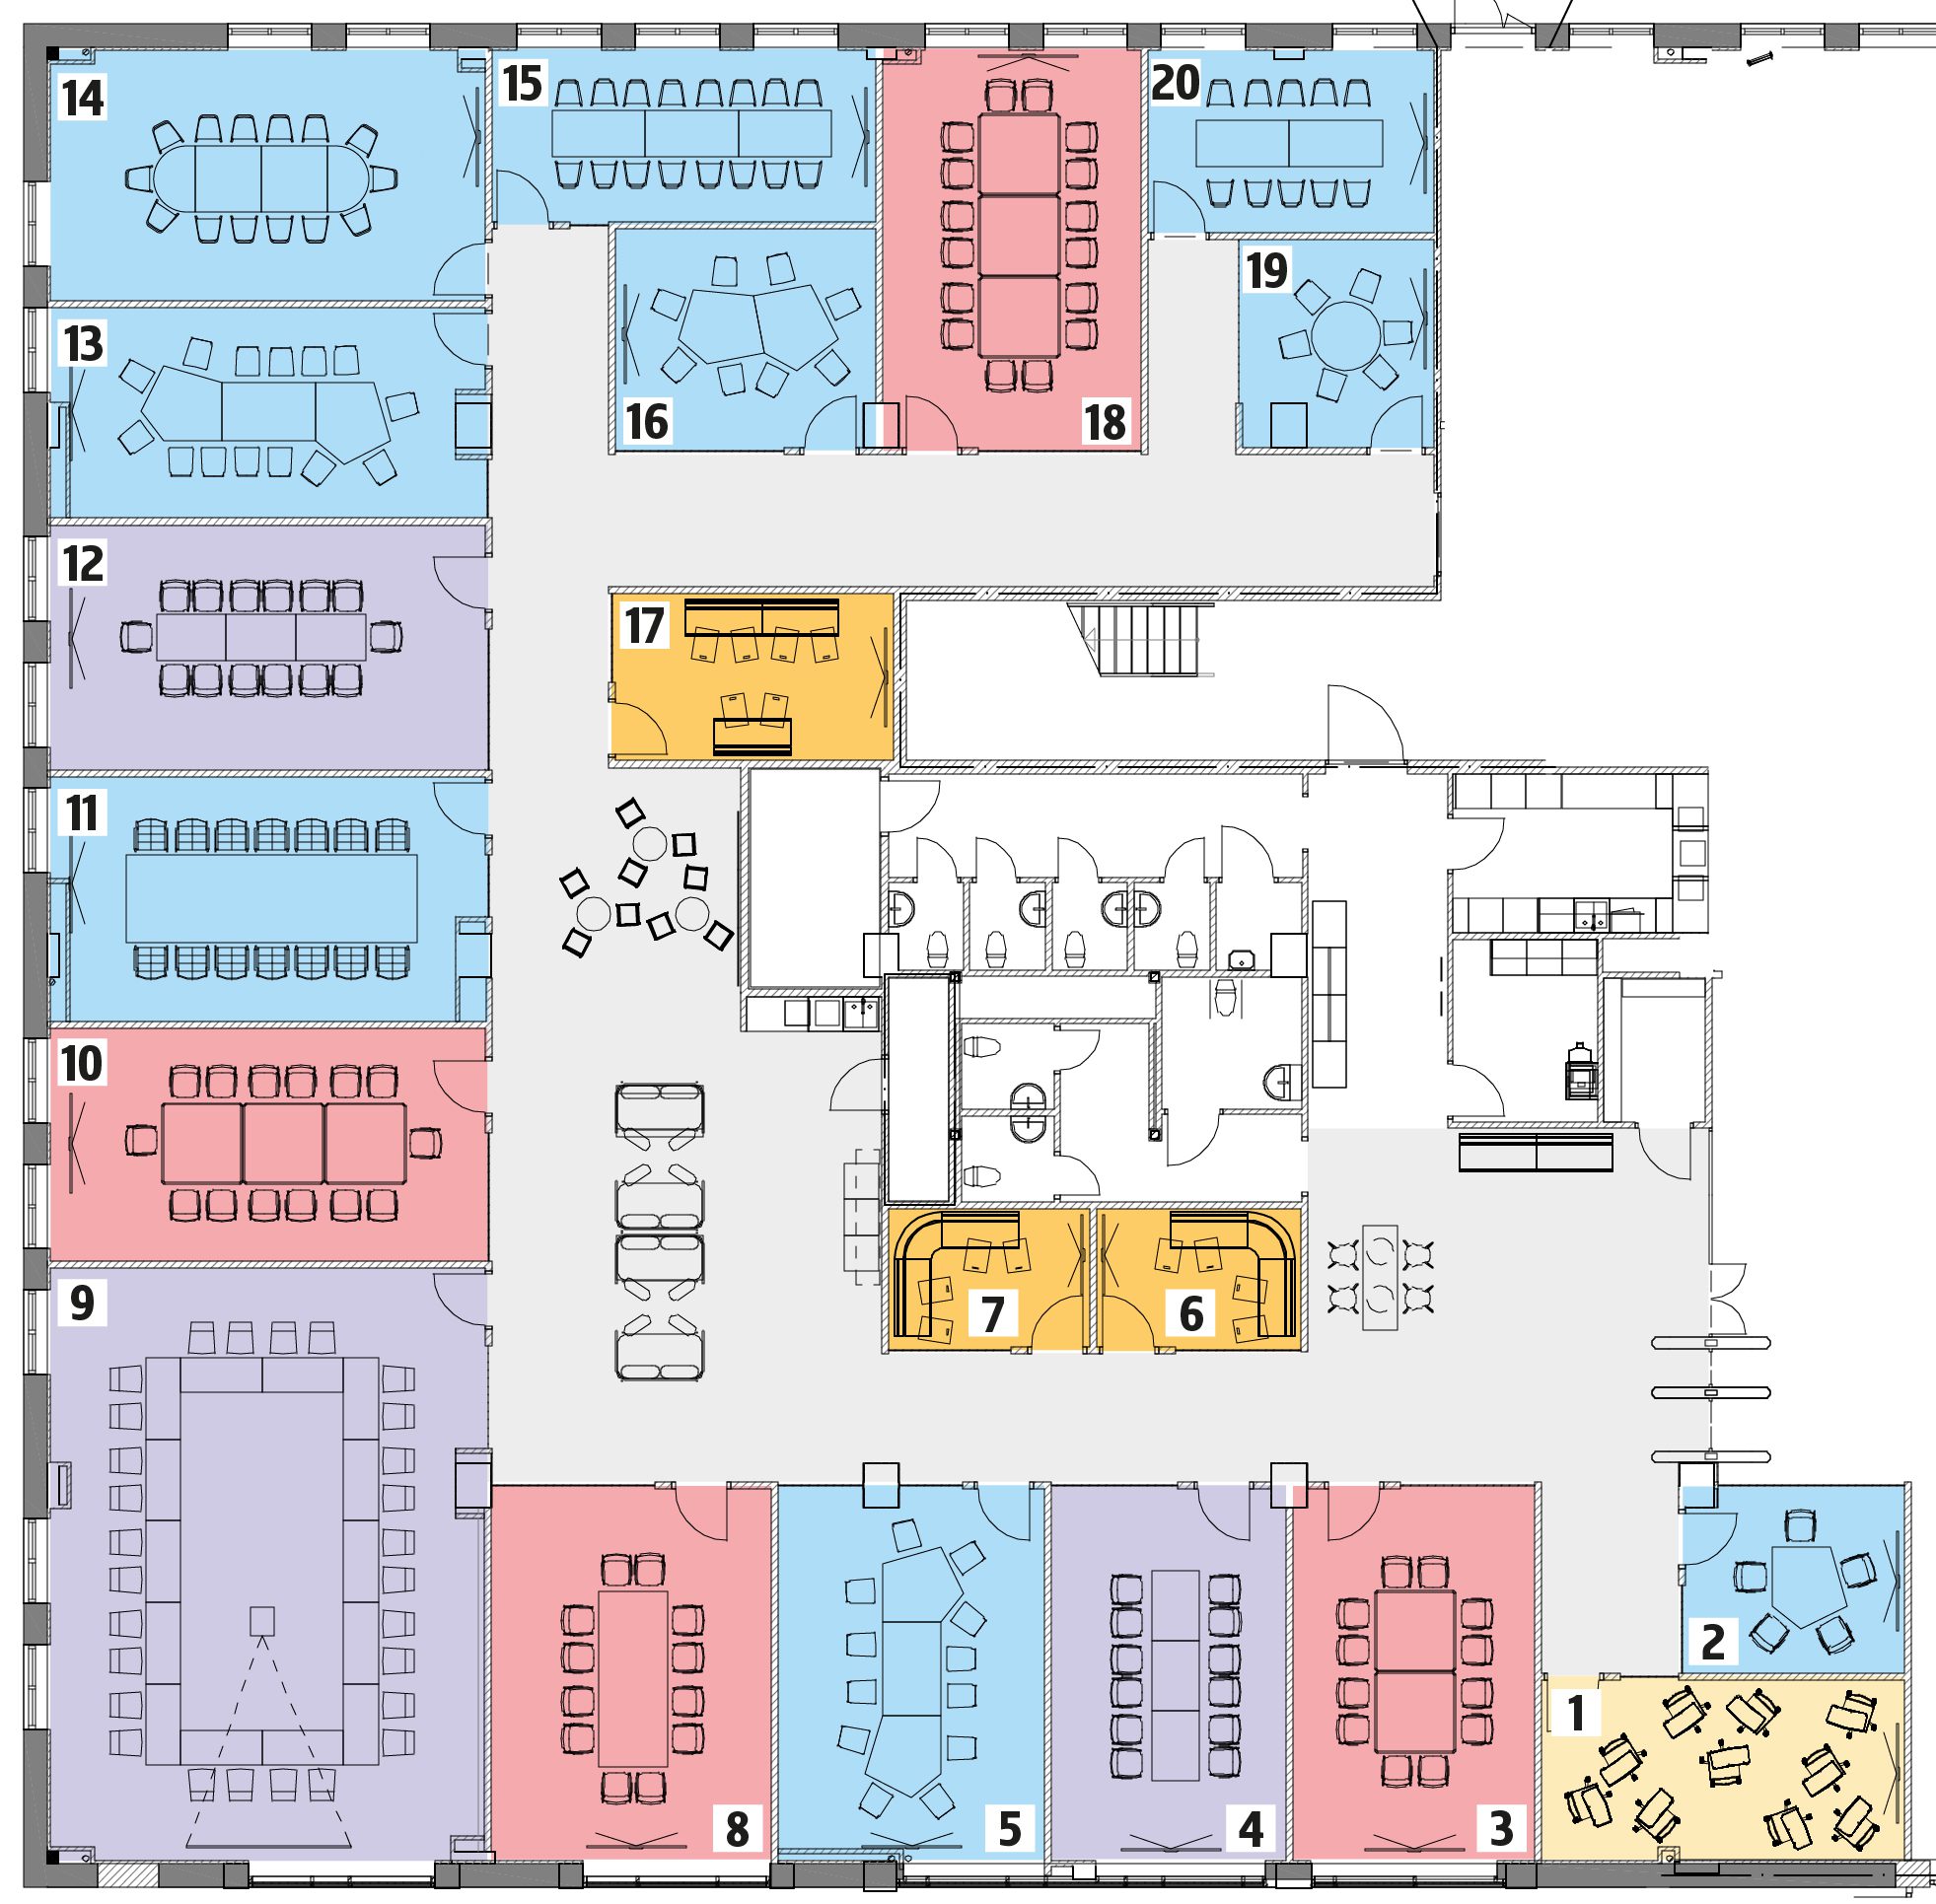 Karta över konferensens möblering, med rumsnummer och färgkodning.